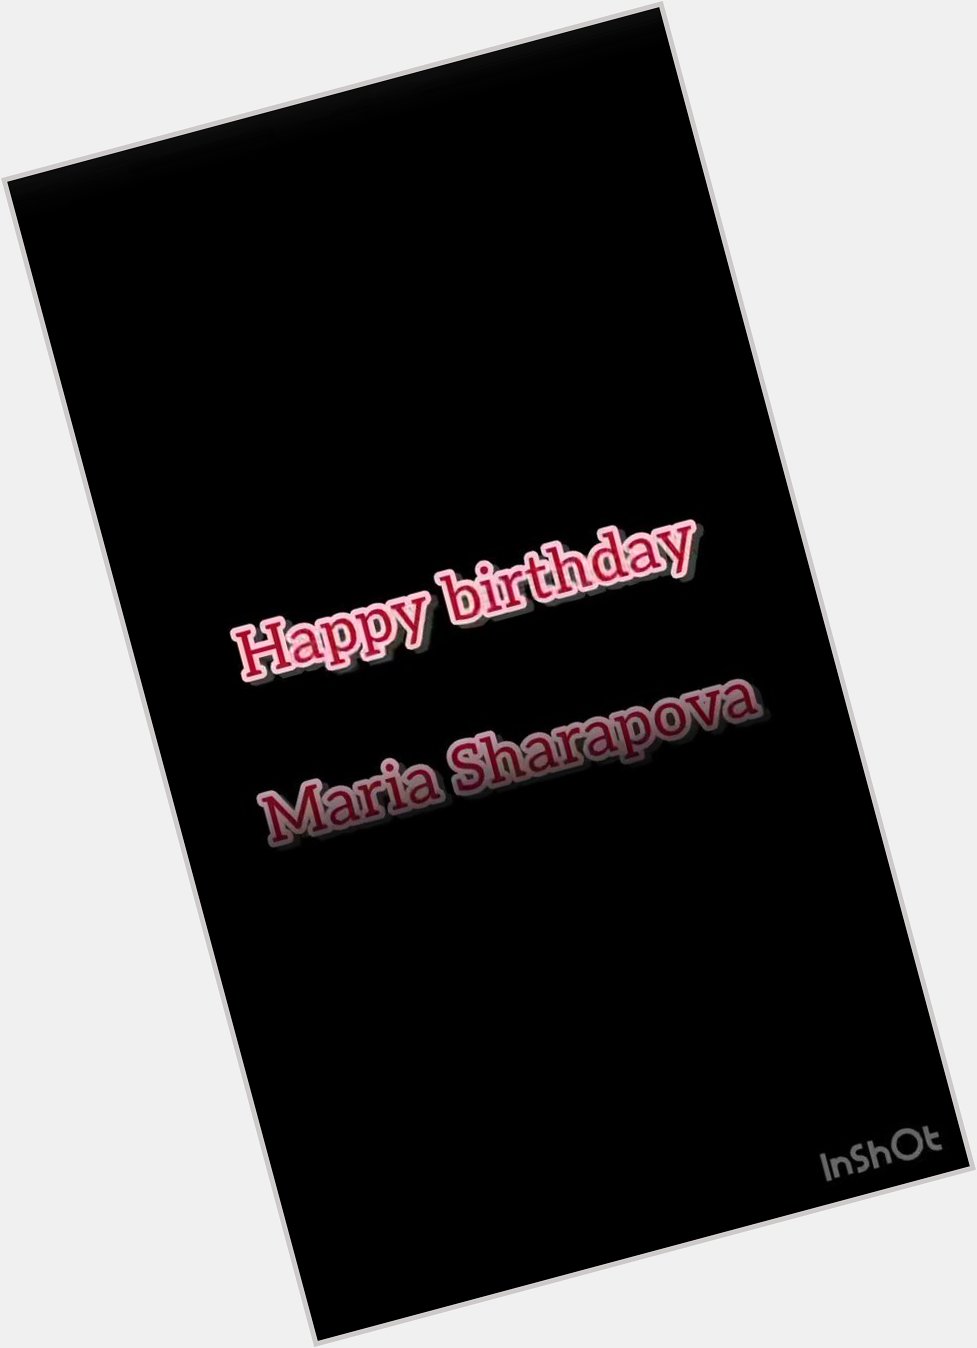 Wishing a very happy birthday to Maria Sharapova    